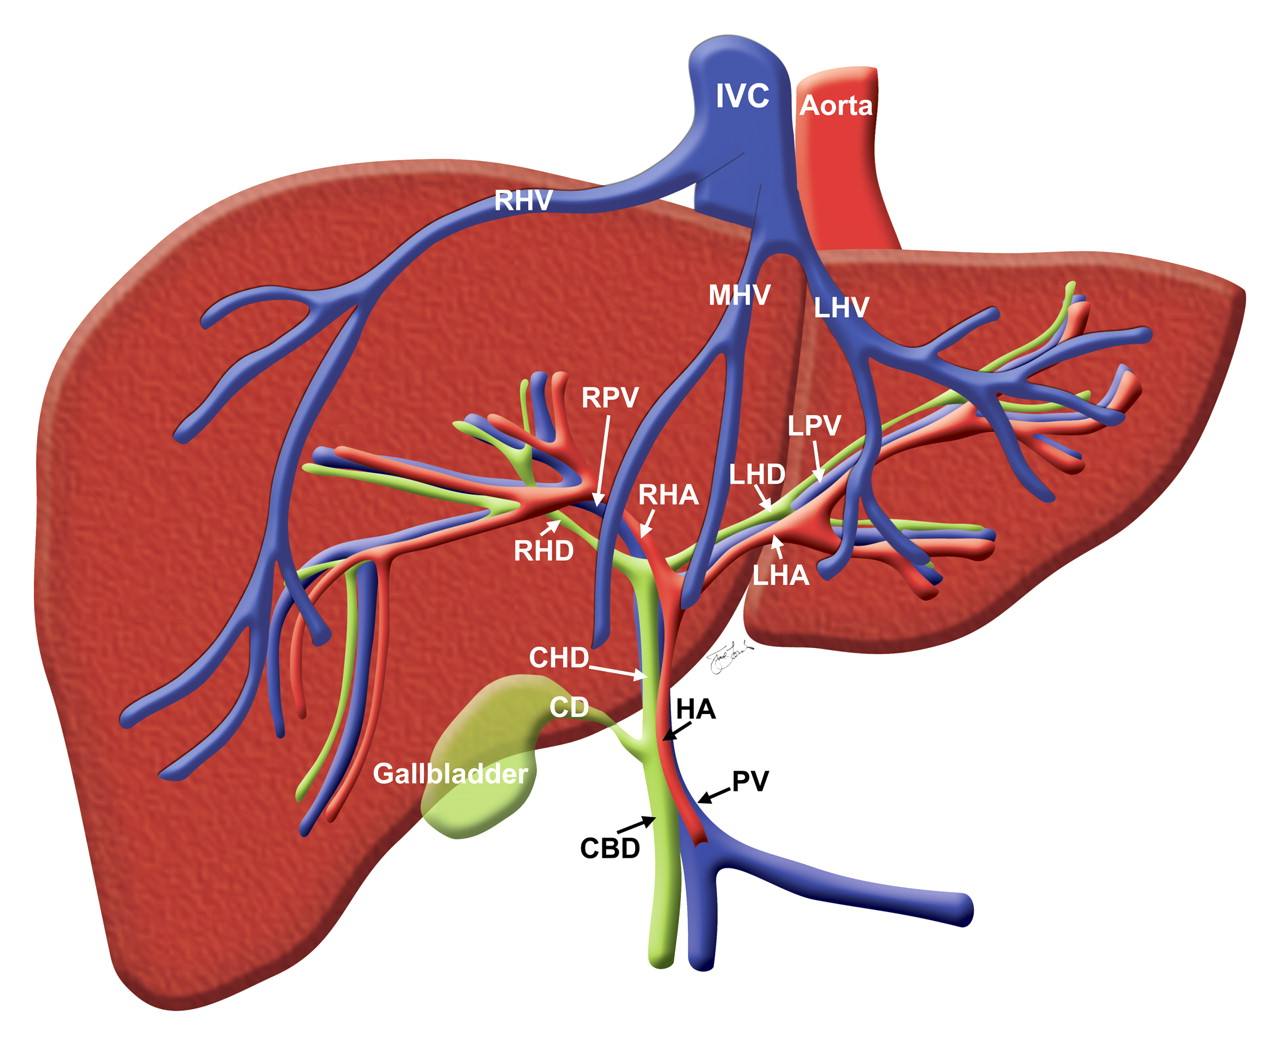 肝脏与胆囊的解剖图图片